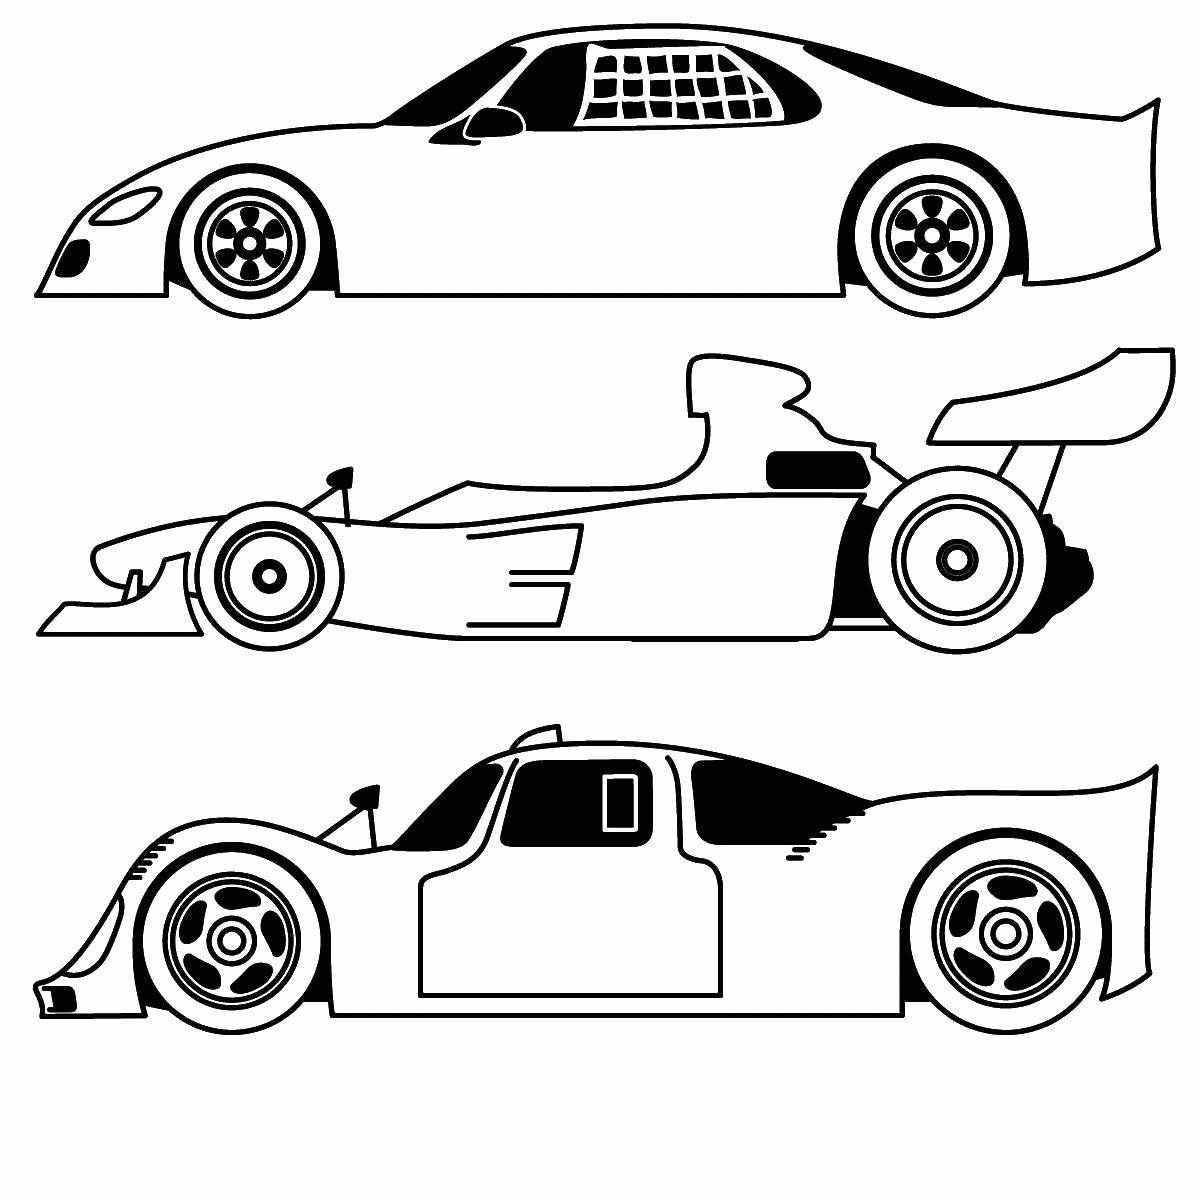 Fantastic racing car coloring book for kids